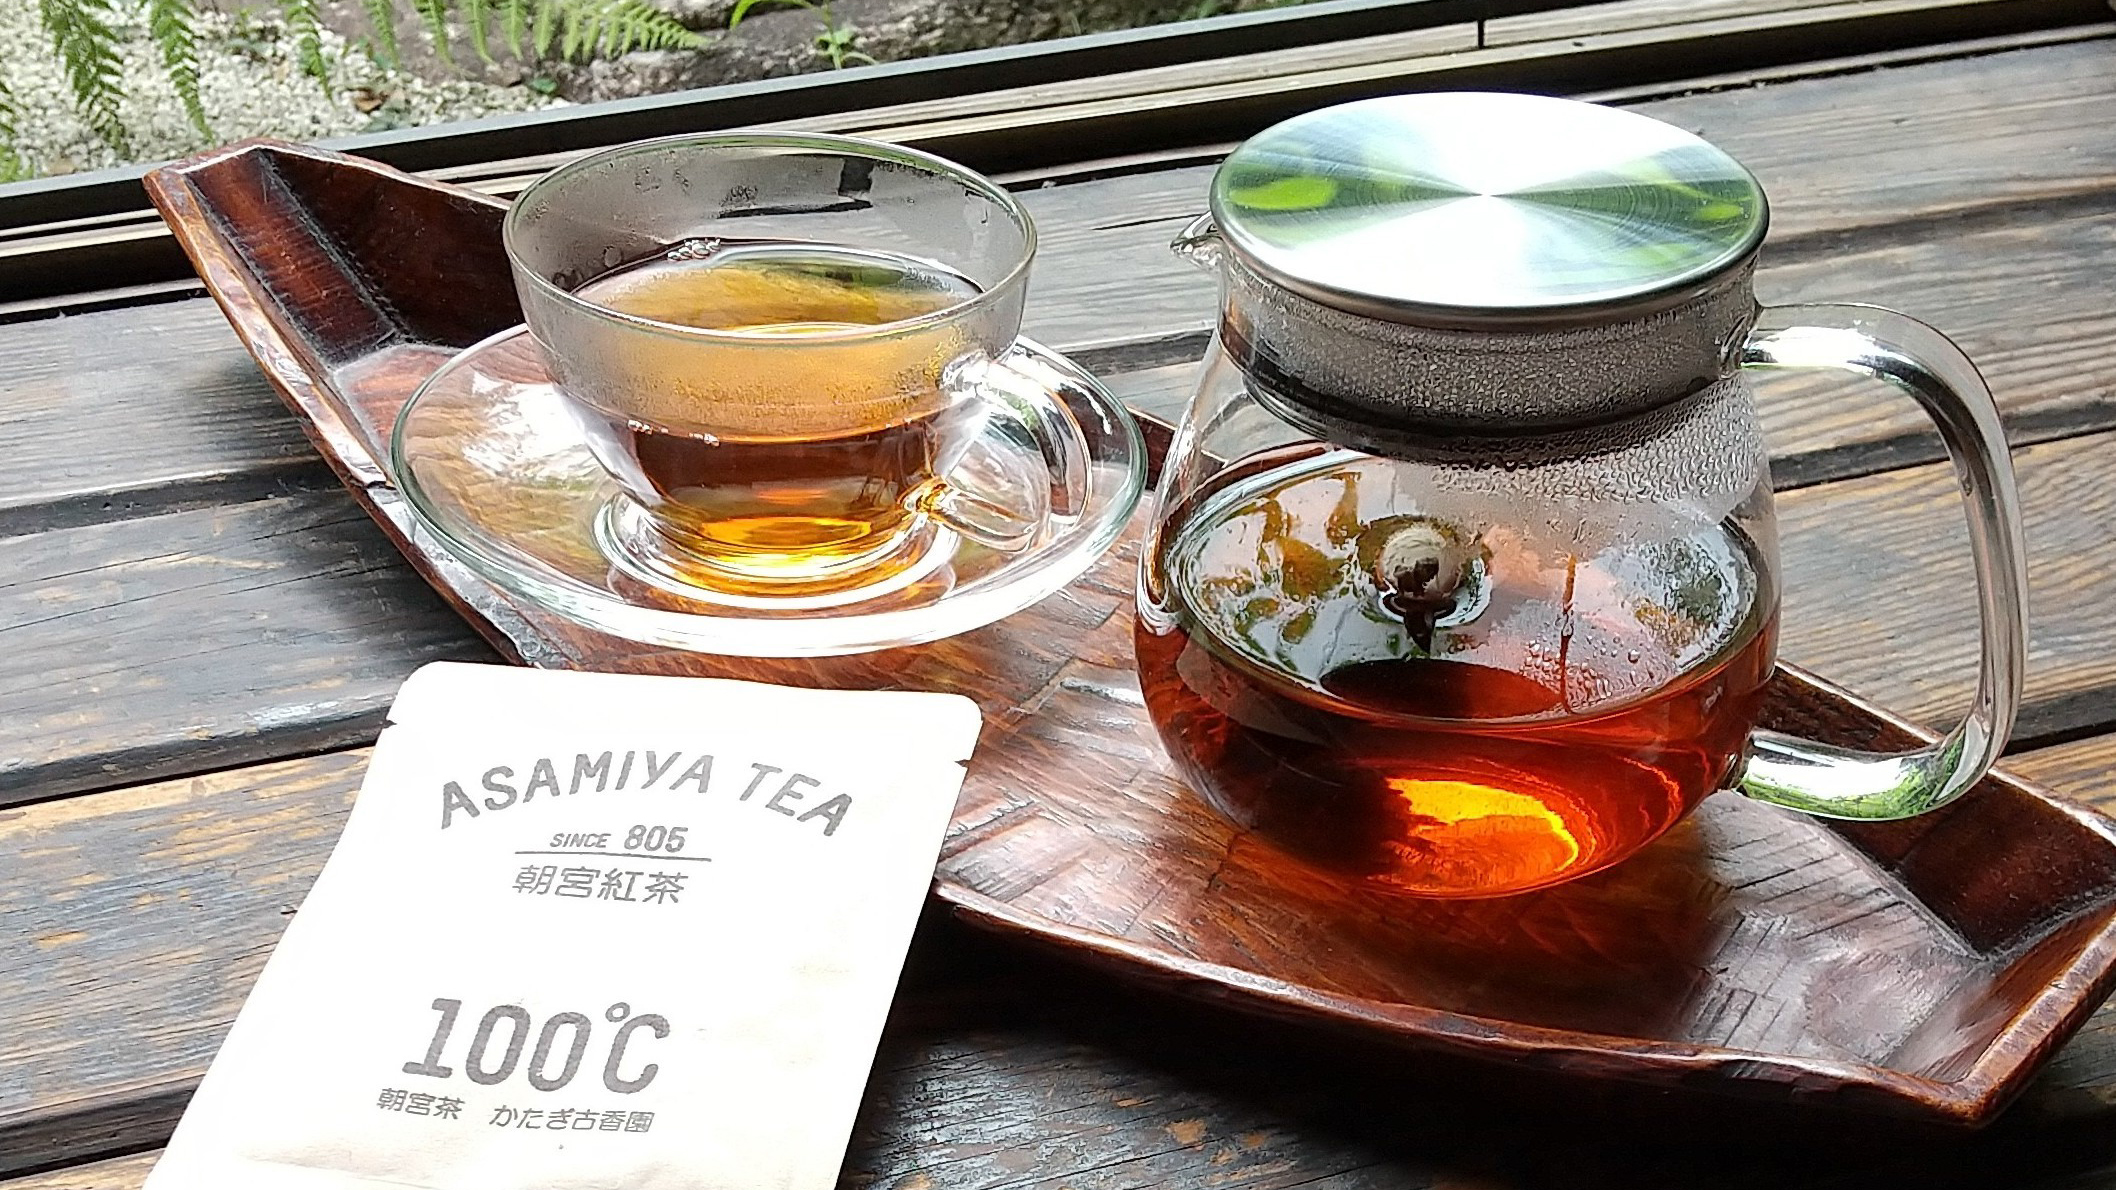 すべてのお部屋に、滋賀県朝宮産の和紅茶をセットしております（かたぎ古香園様より取り寄せしております）